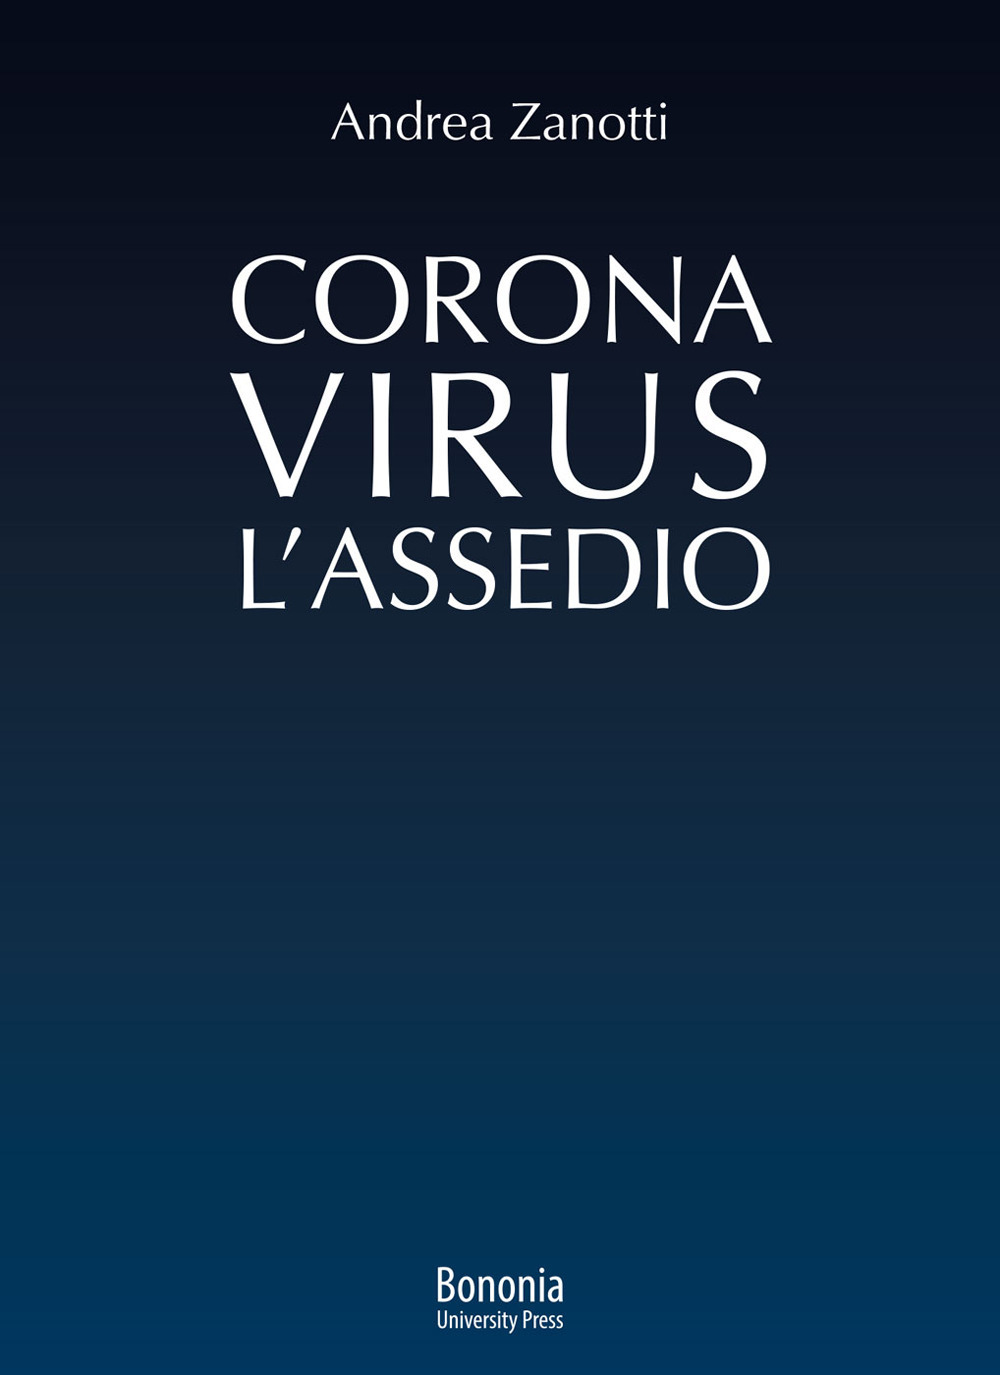 Coronavirus: l'Assedio